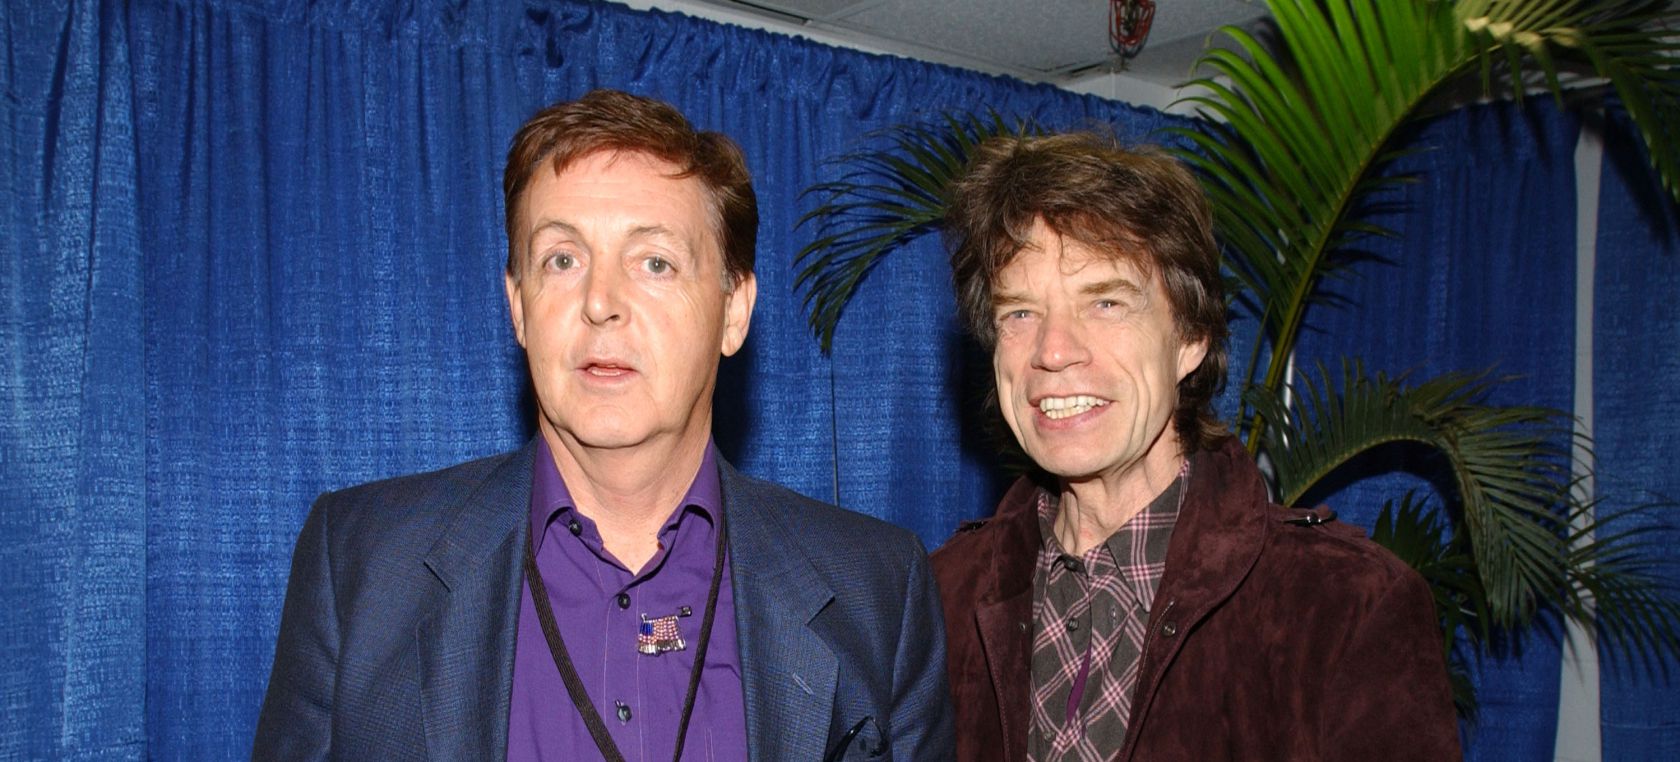 La rivalidad entre los Beatles y los Rolling Stones, ¿realidad o campaña de marketing?